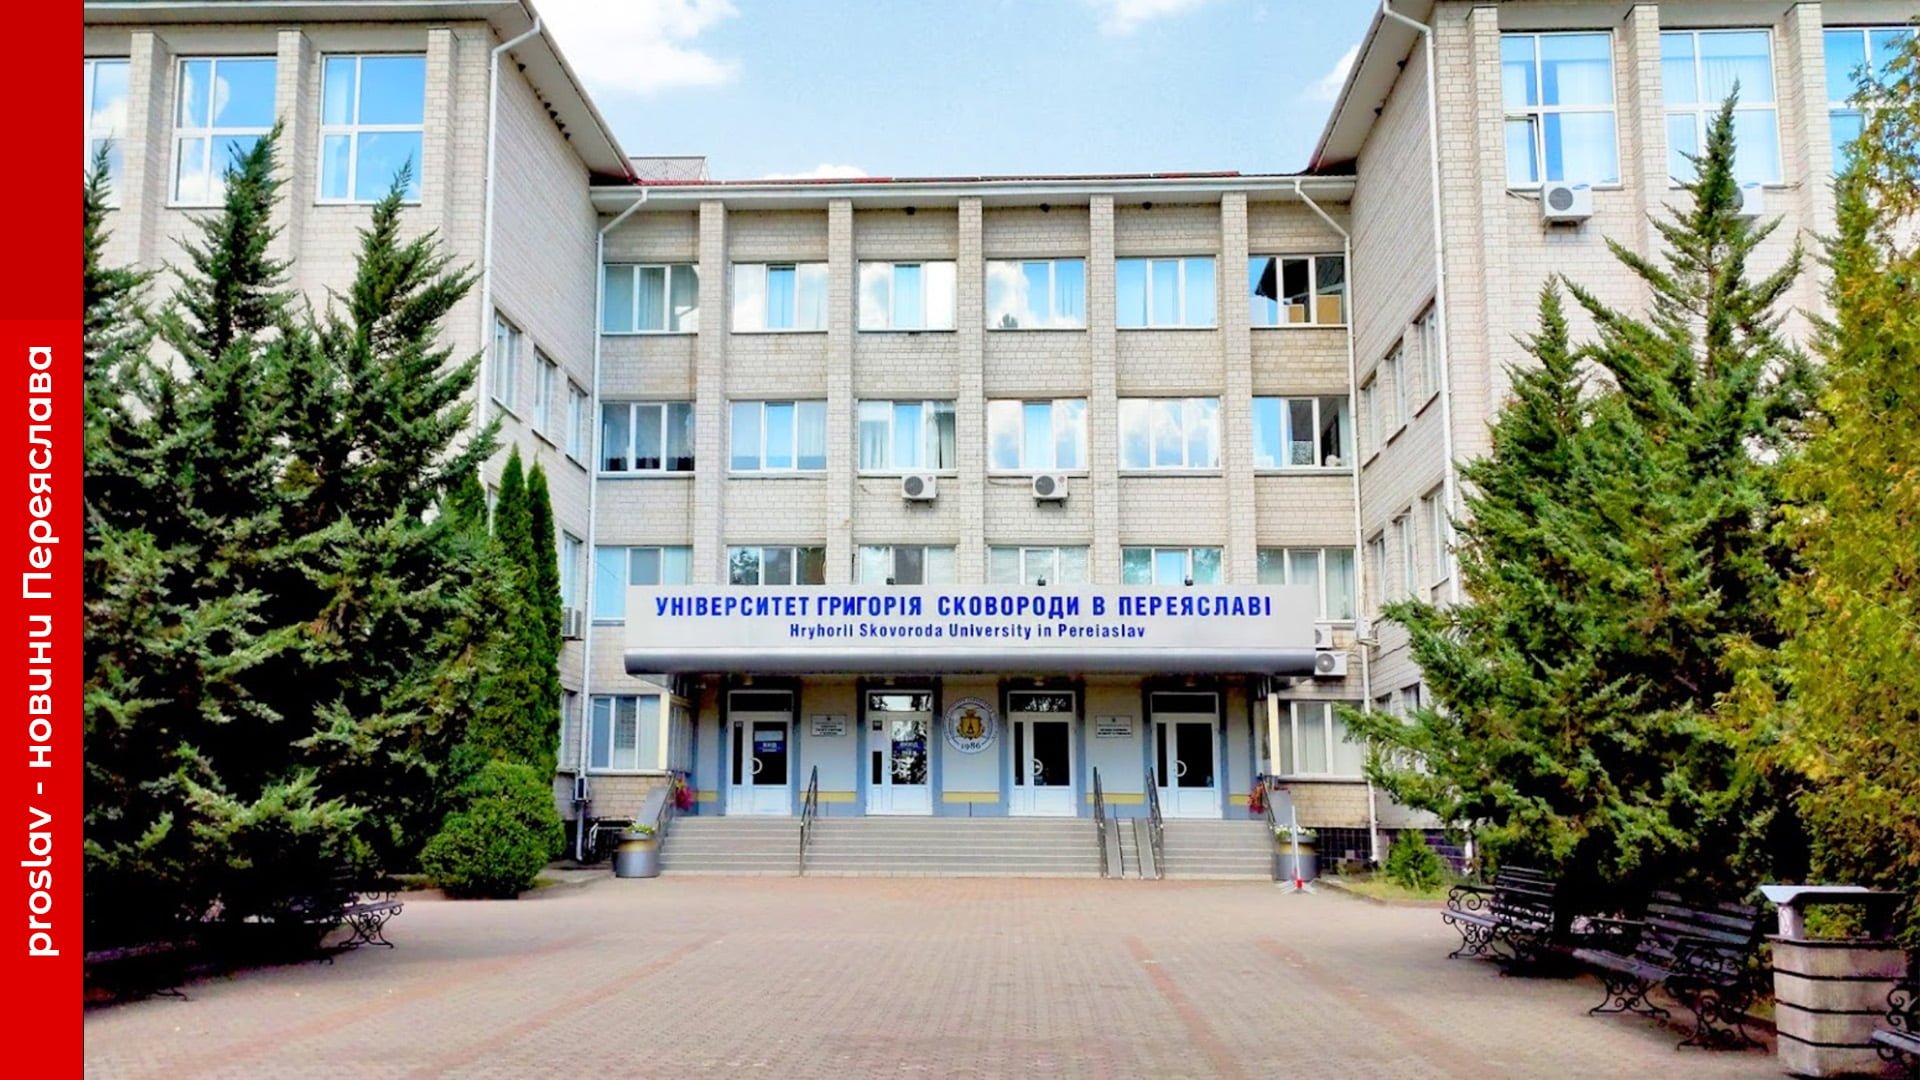 Університет Григорія Сковороди в Переяславі - серед сотні найпопулярніших в Україні: дані рейтингу UniRank